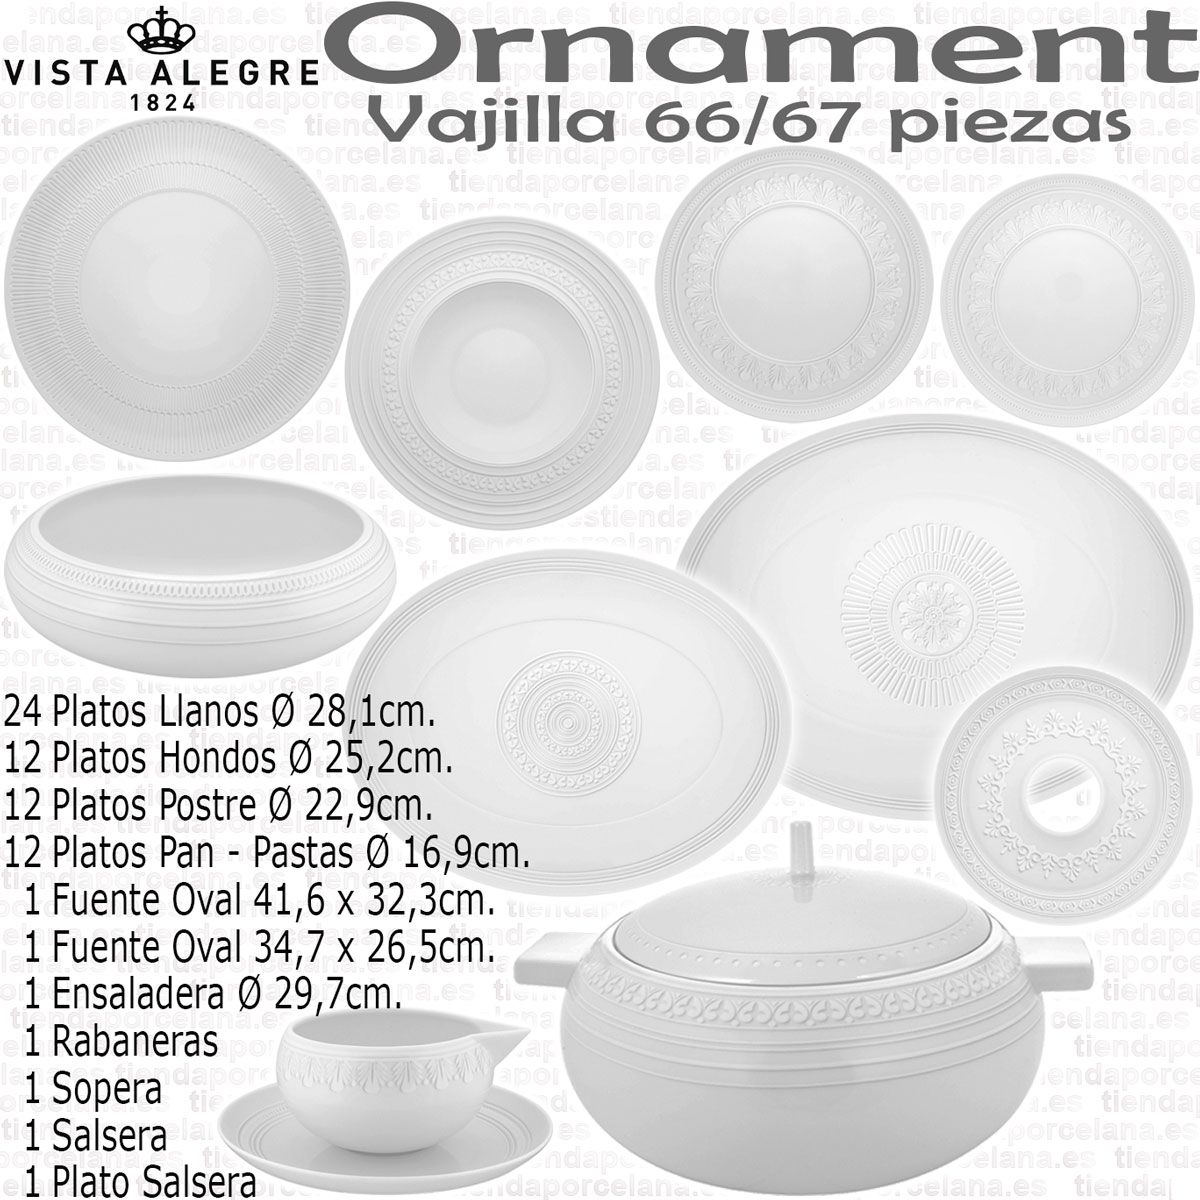 Vajilla Moderna 56 piezas Ornament Vista Alegre - REBAJAS Corte Inglés